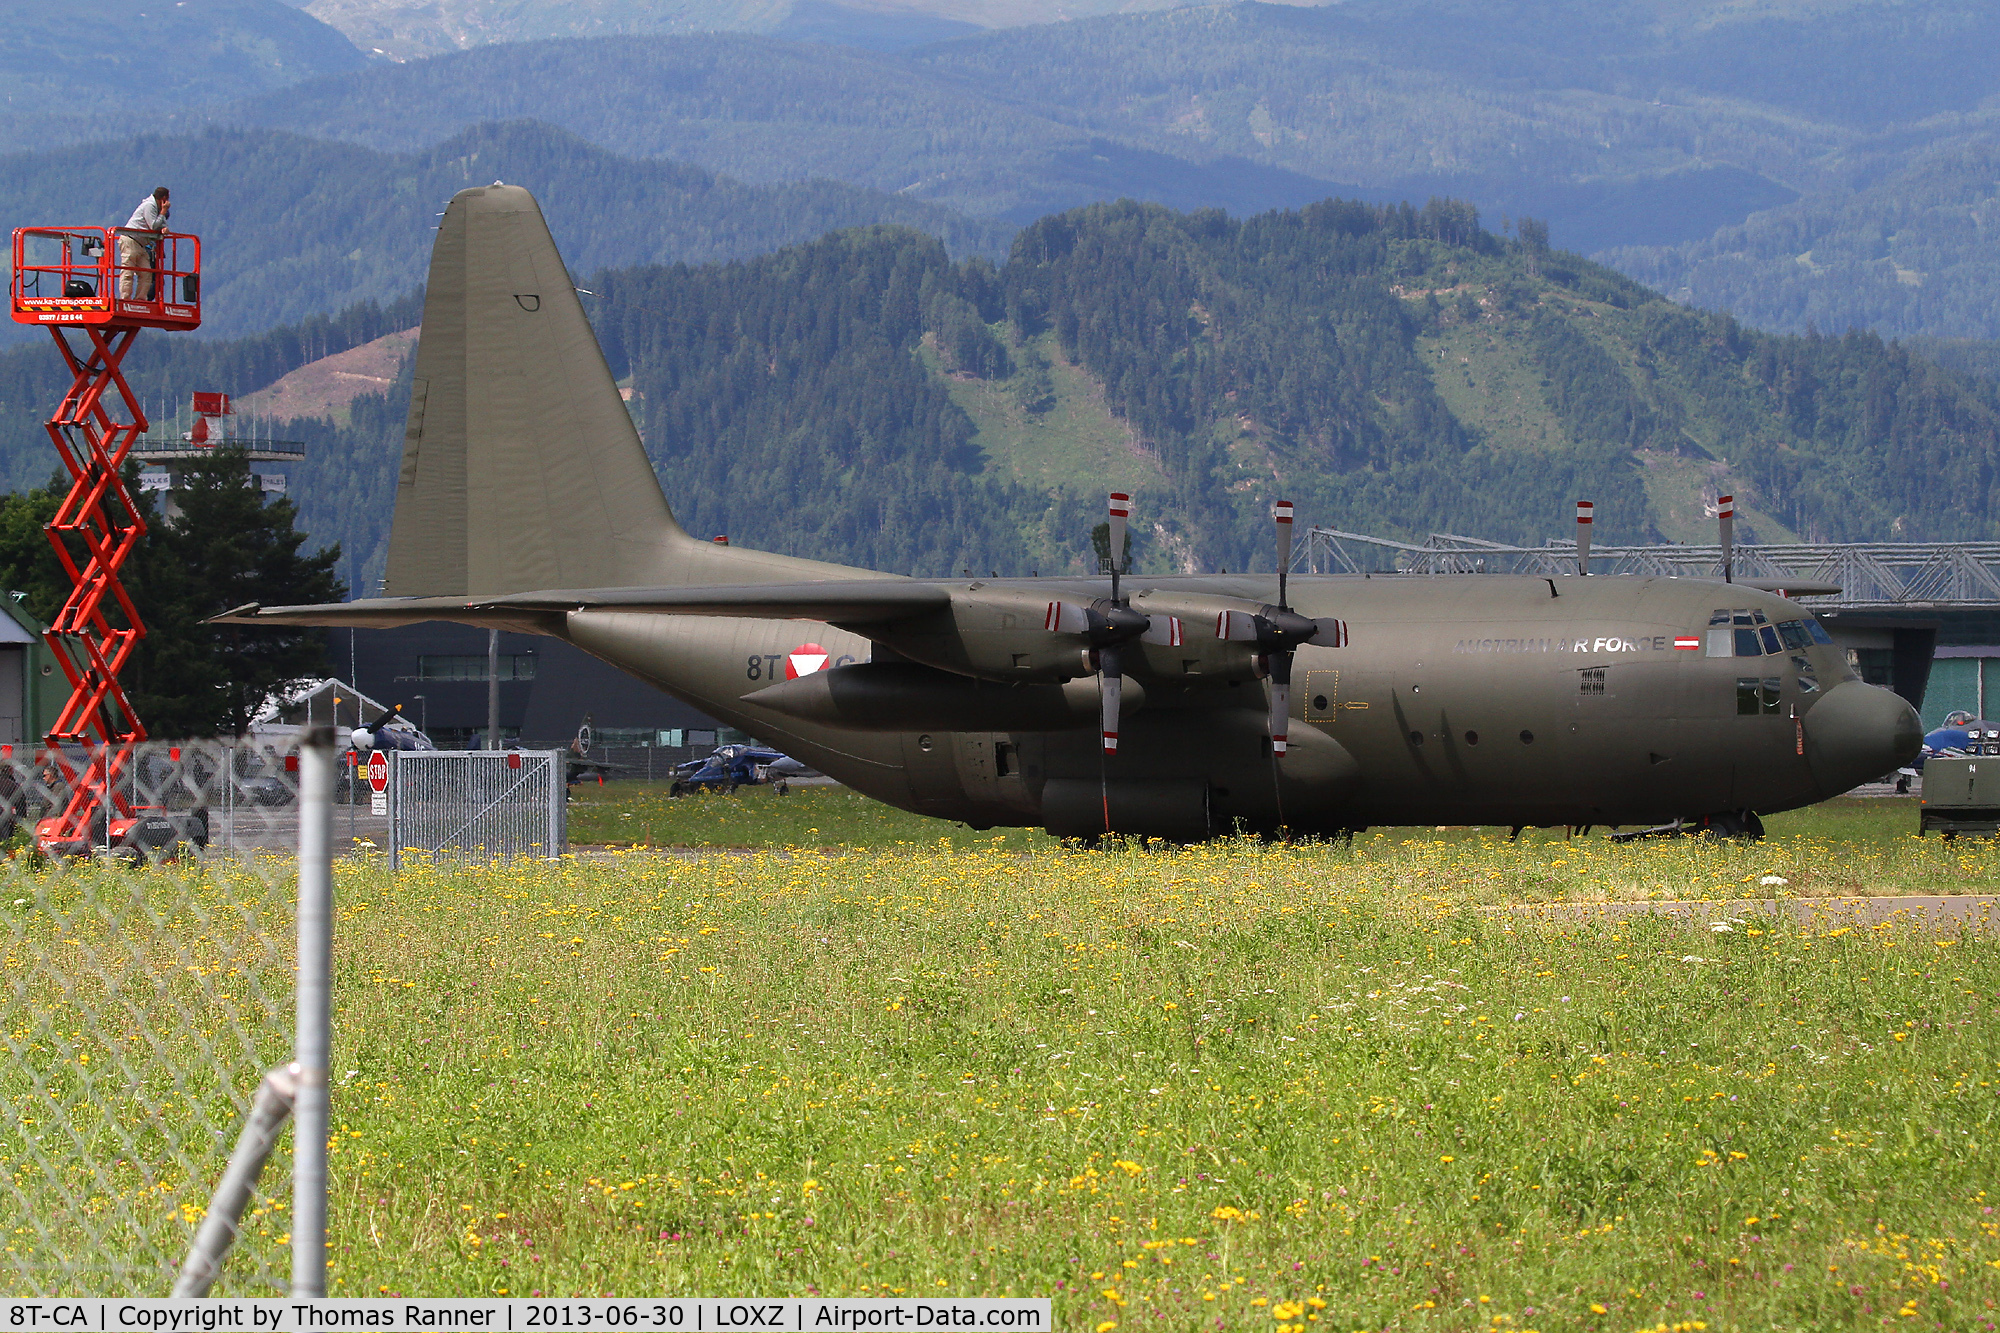 8T-CA, 1967 Lockheed C-130K Hercules C.1 C/N 382-4198, Austrian AF C-130